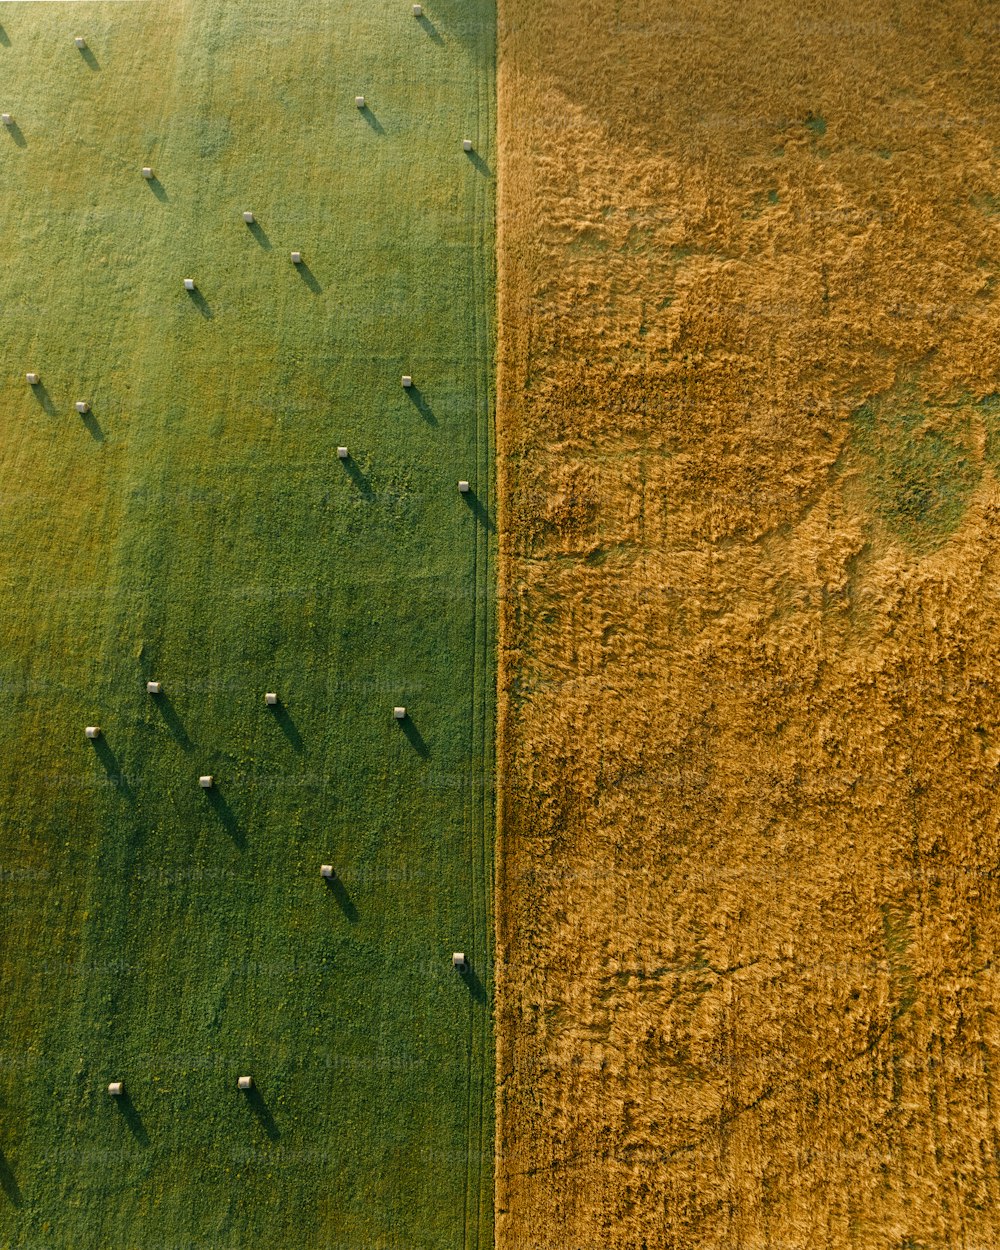 une vue aérienne d’un champ vert et d’un champ jaune